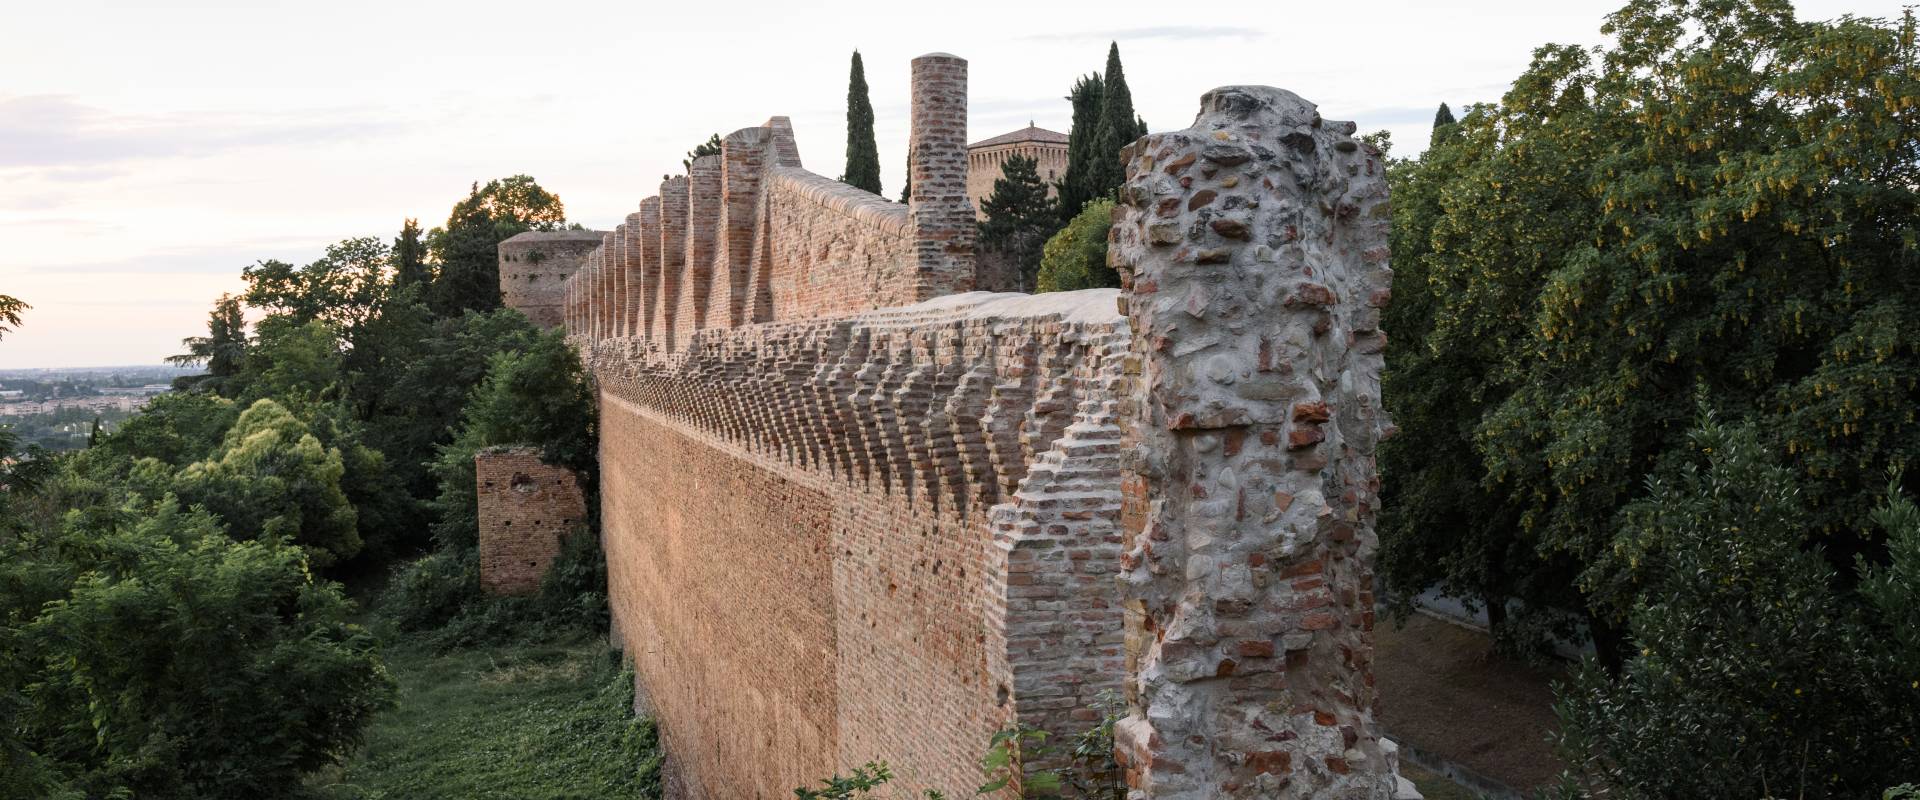 Mura della Rocca Malatestiana 1 foto di Vinc.54